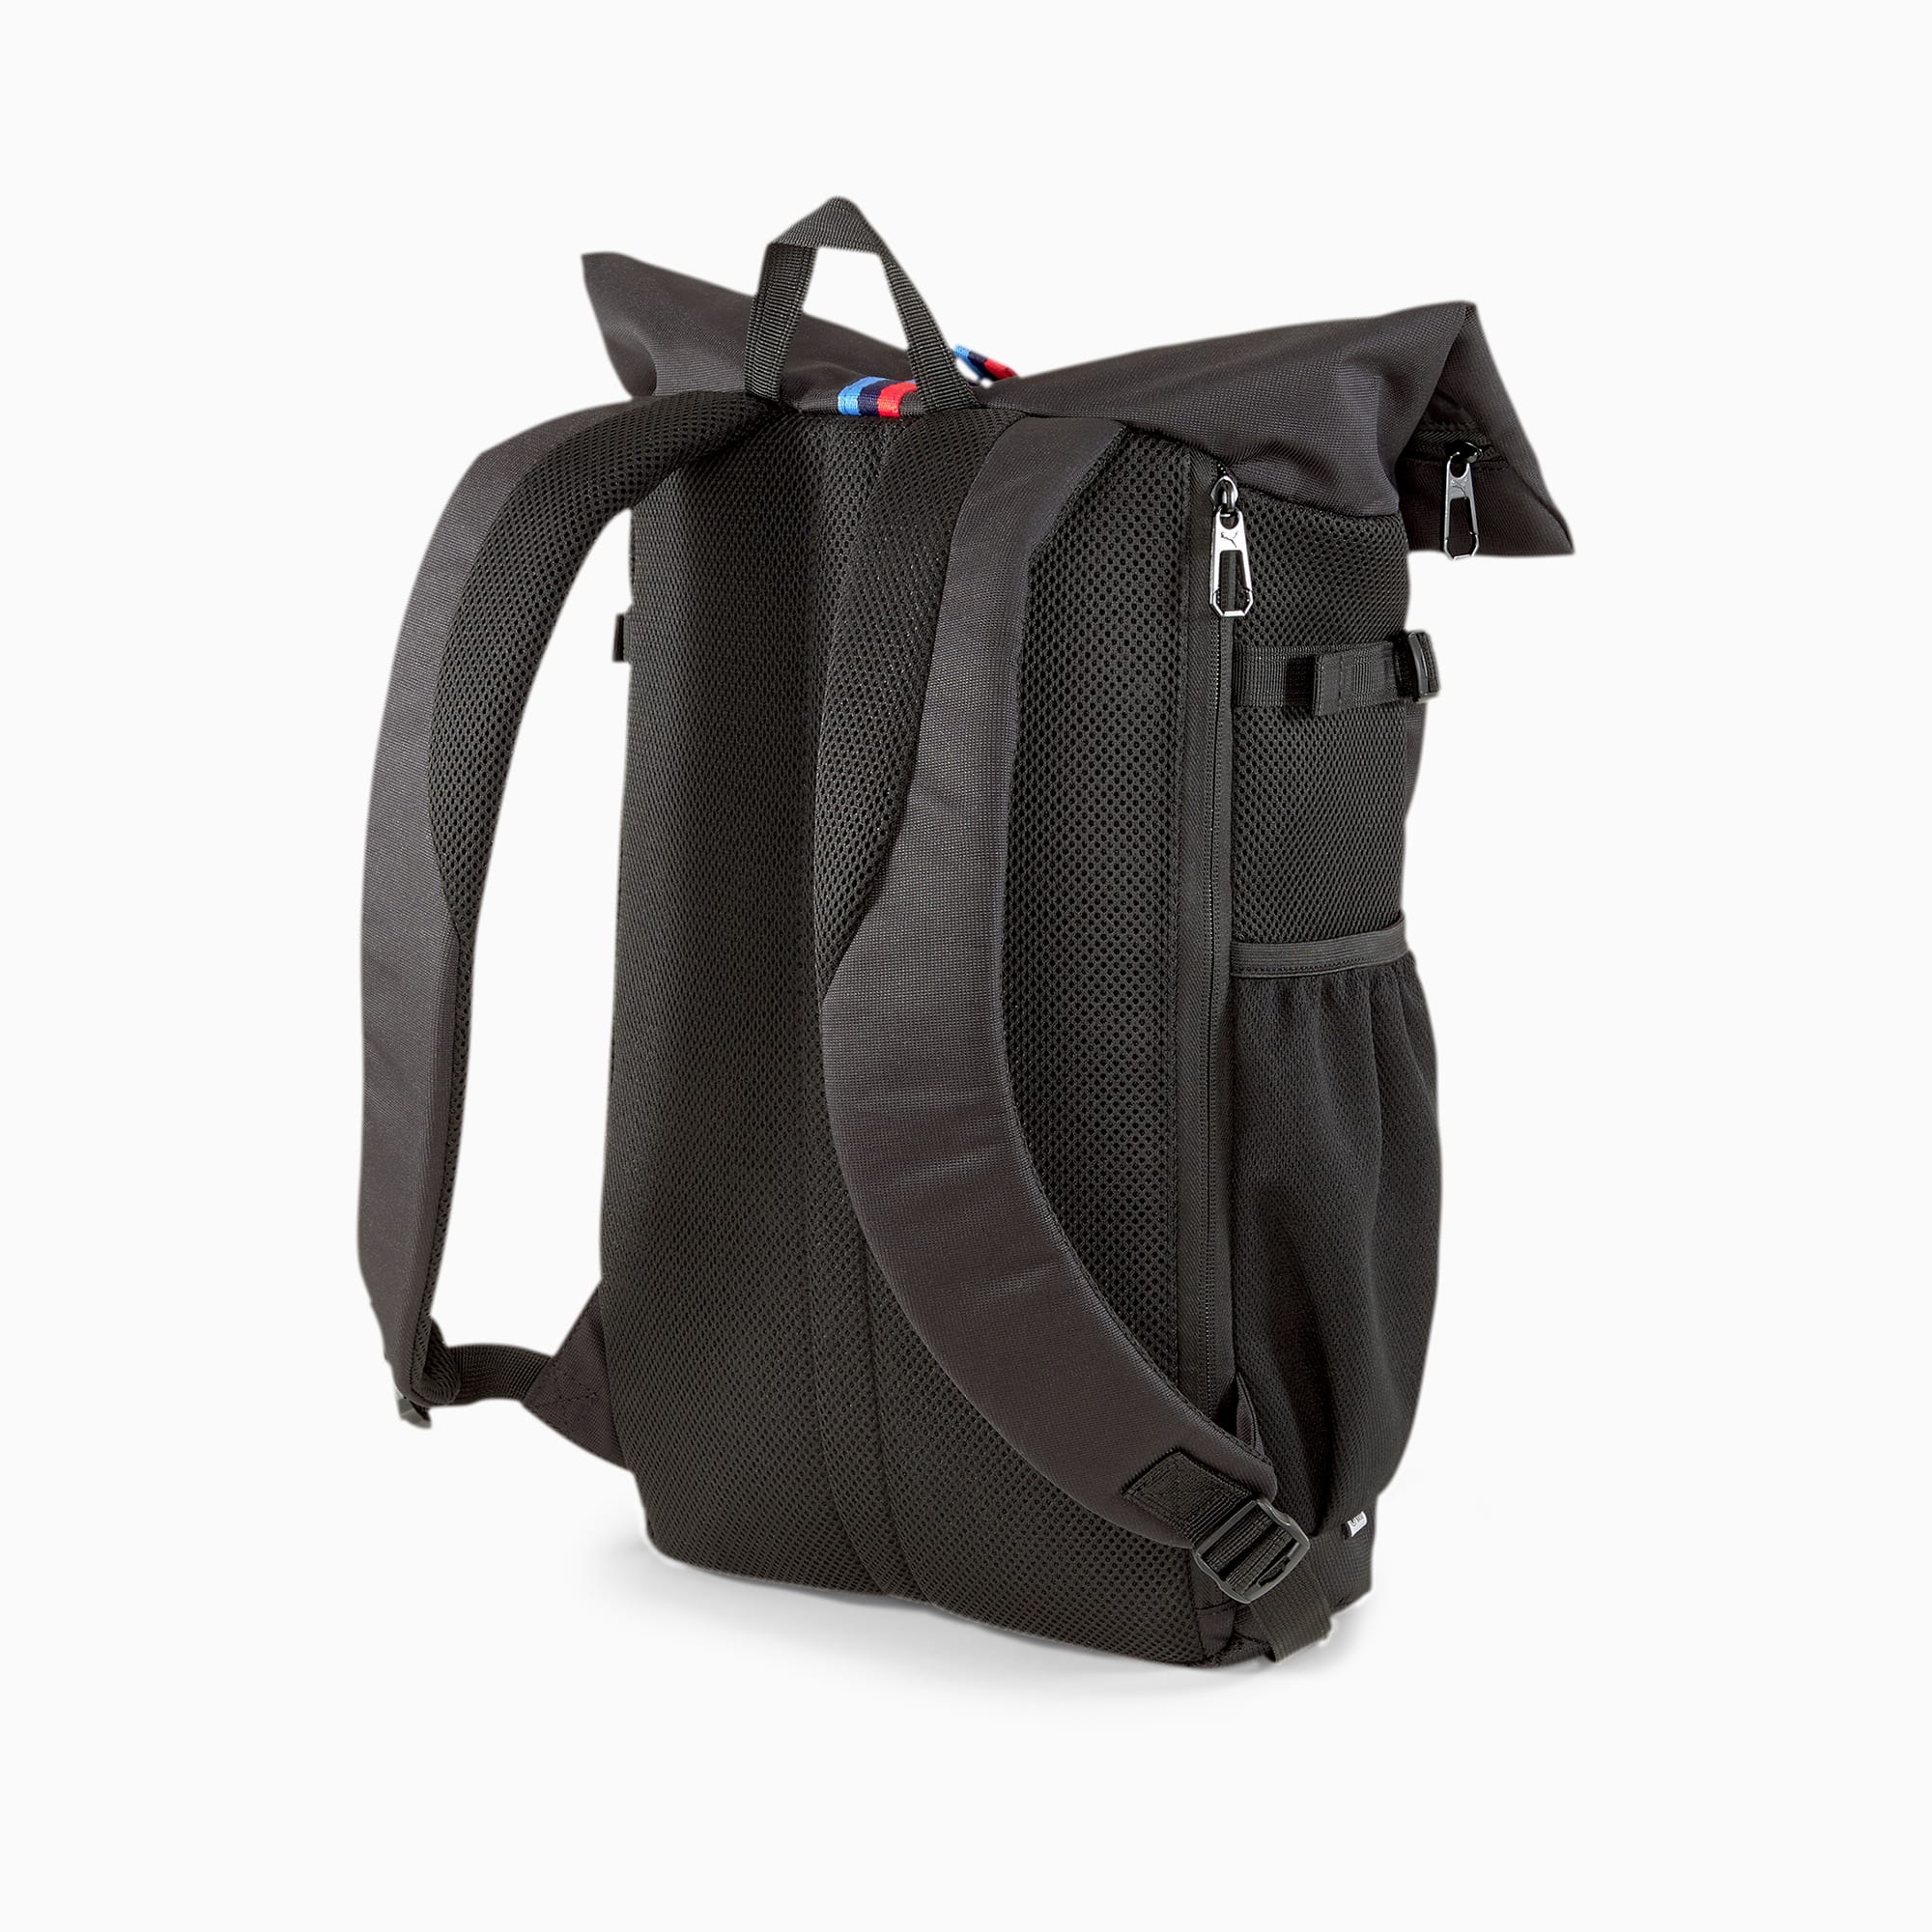 puma bmw backpack black